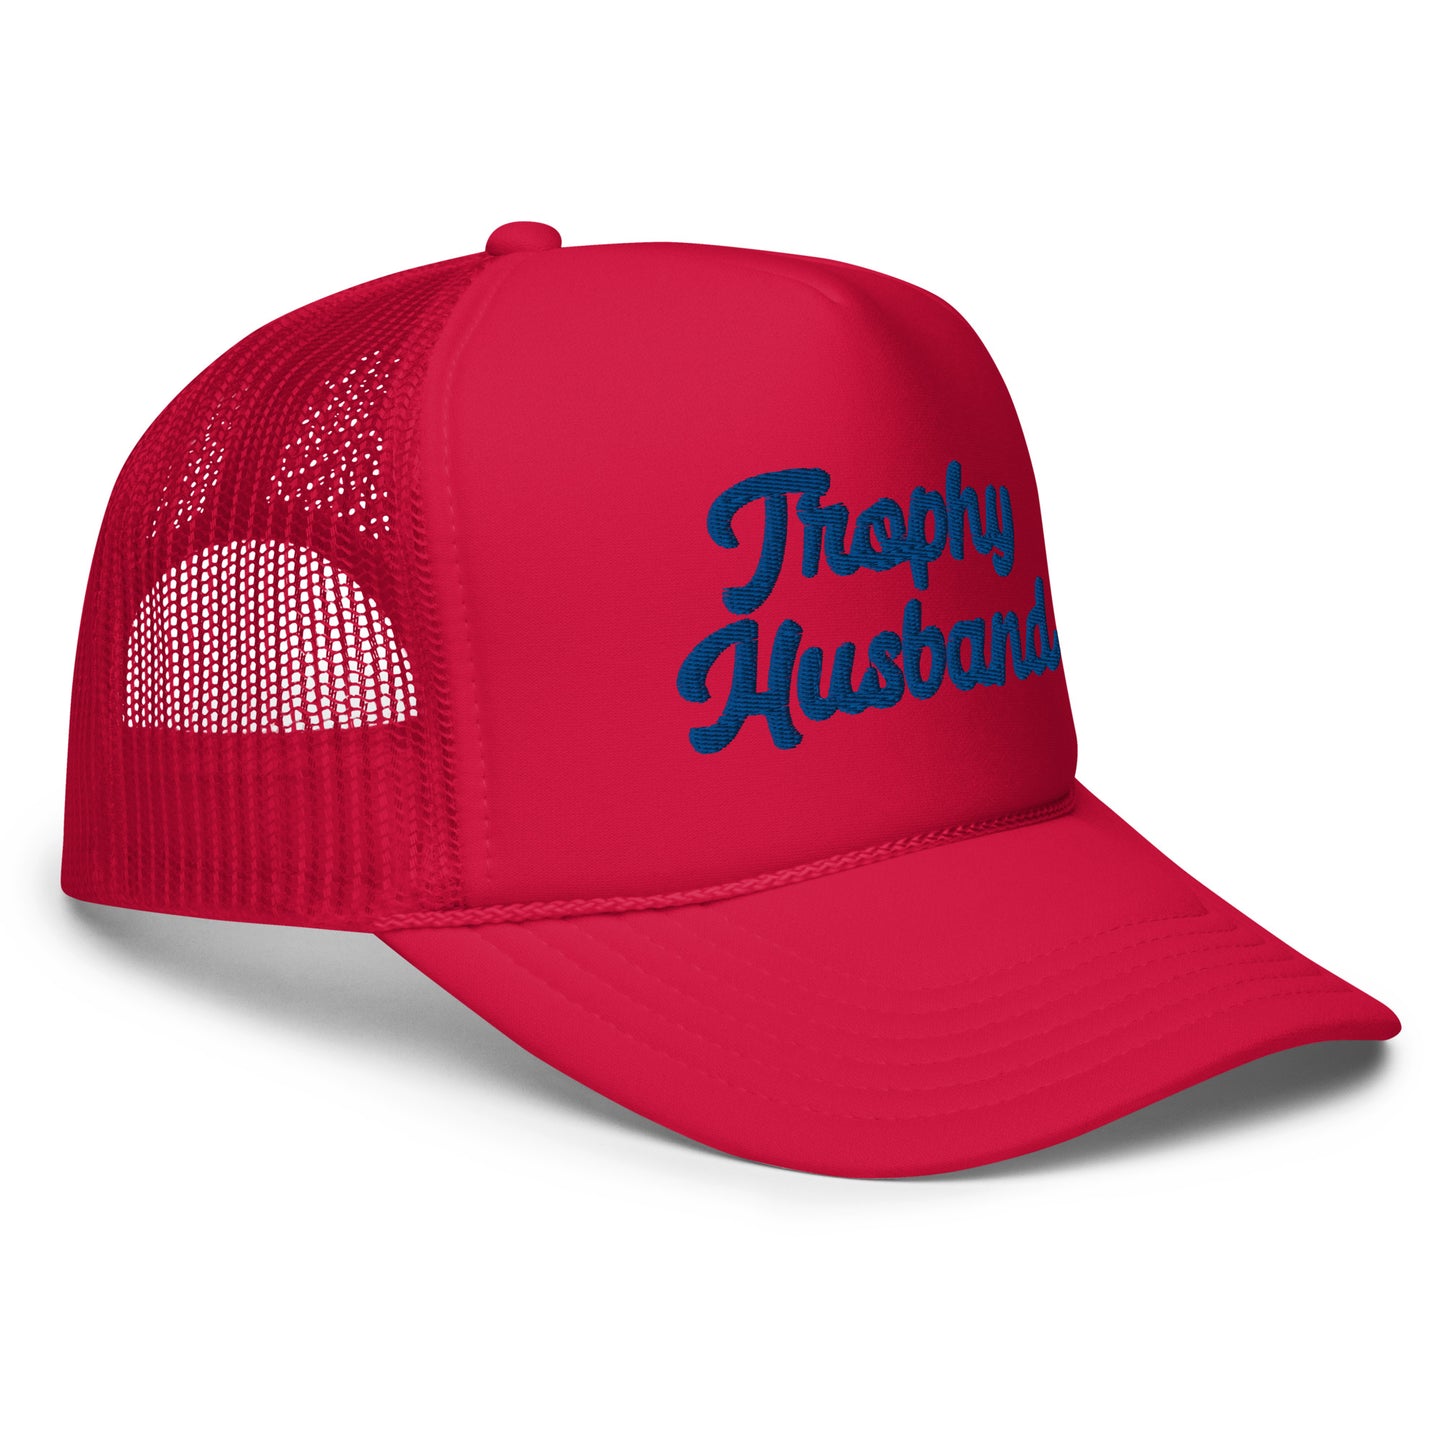 Trophy Husband trucker hat